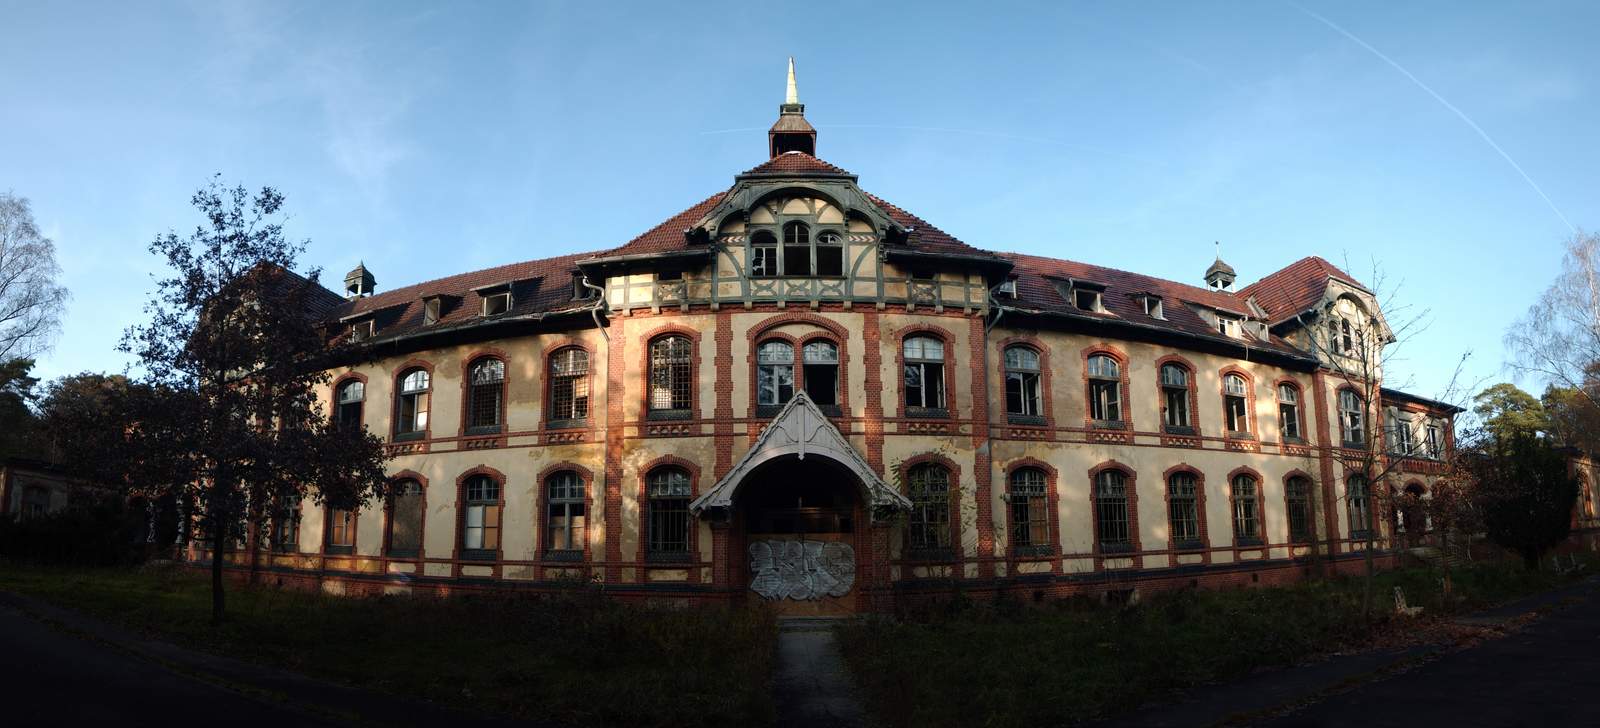 beelitz heilstatten17 Abandoned Beelitz Heilstatten Hospital